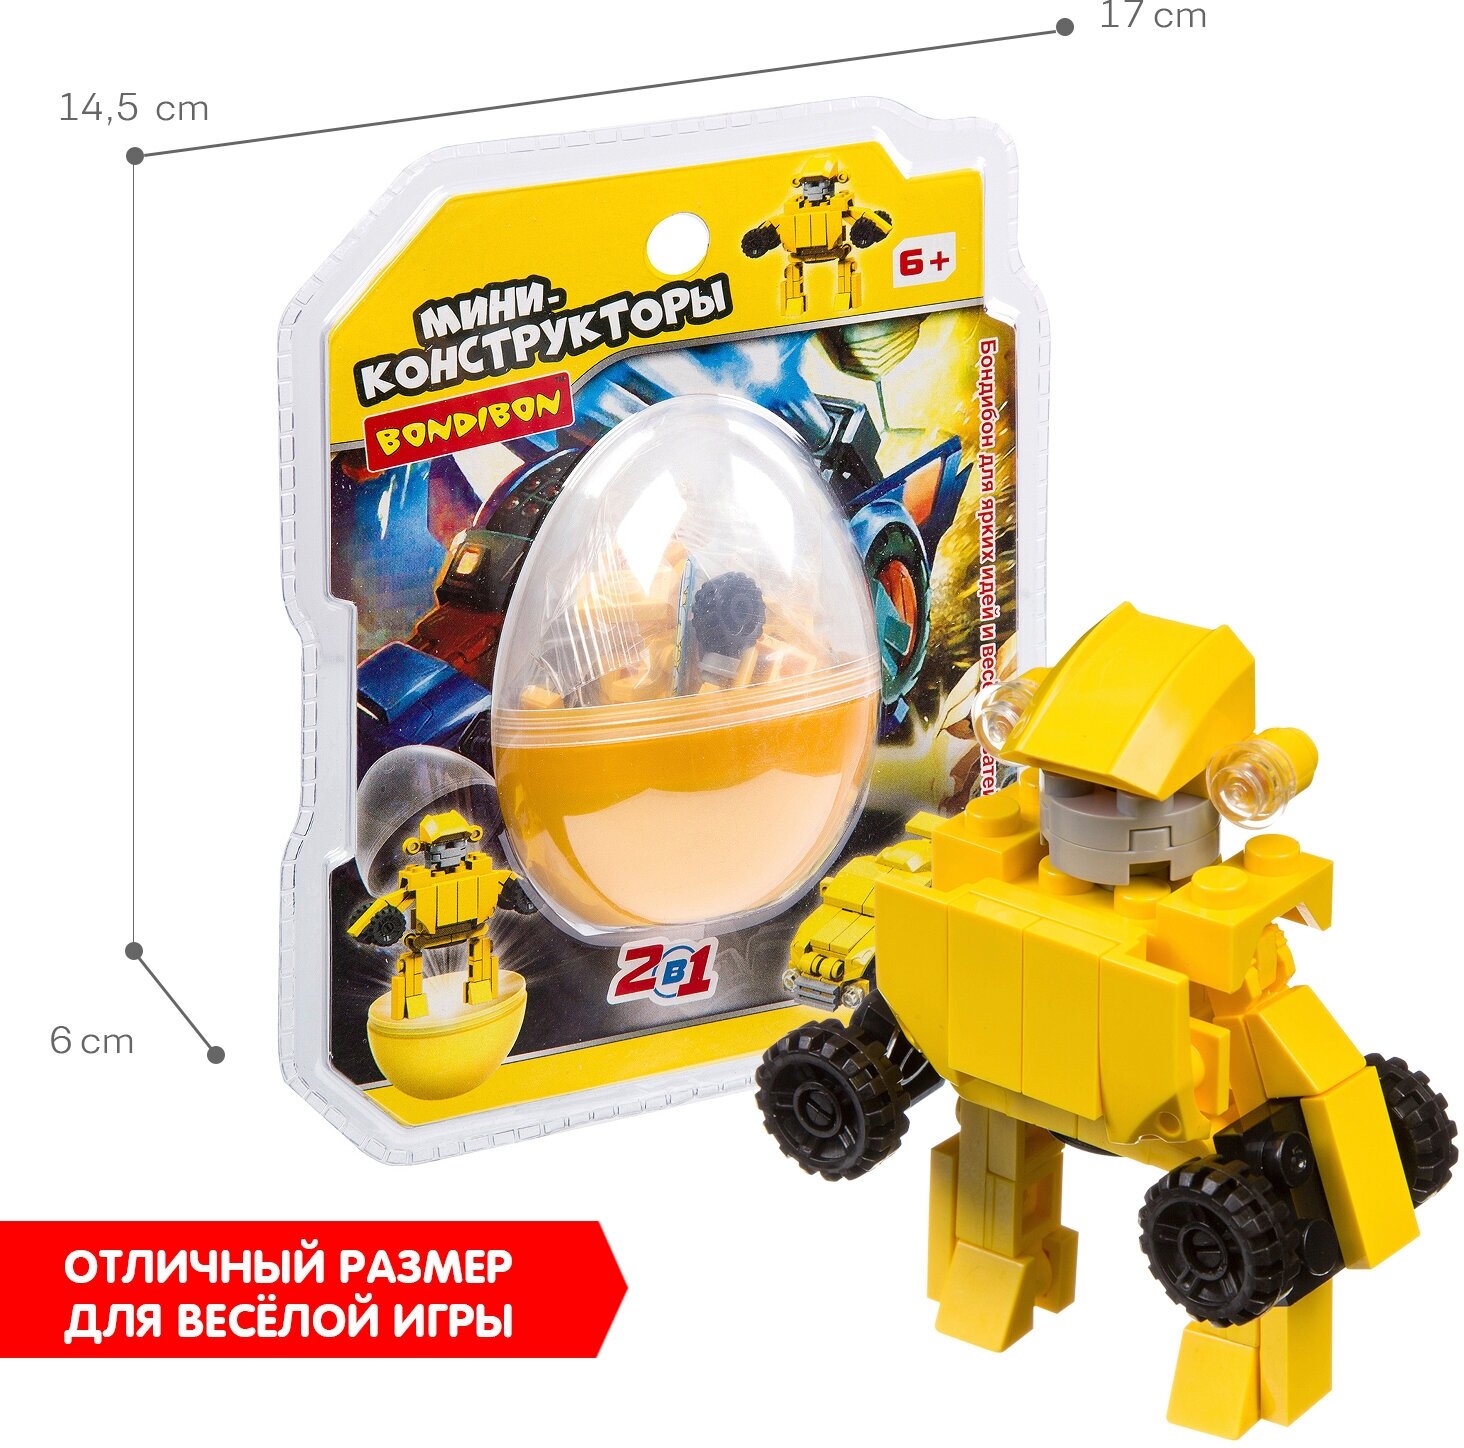 Мини-конструктор в жёлтом яйце, 2в1 Робот-машина Bondibon - фото №6